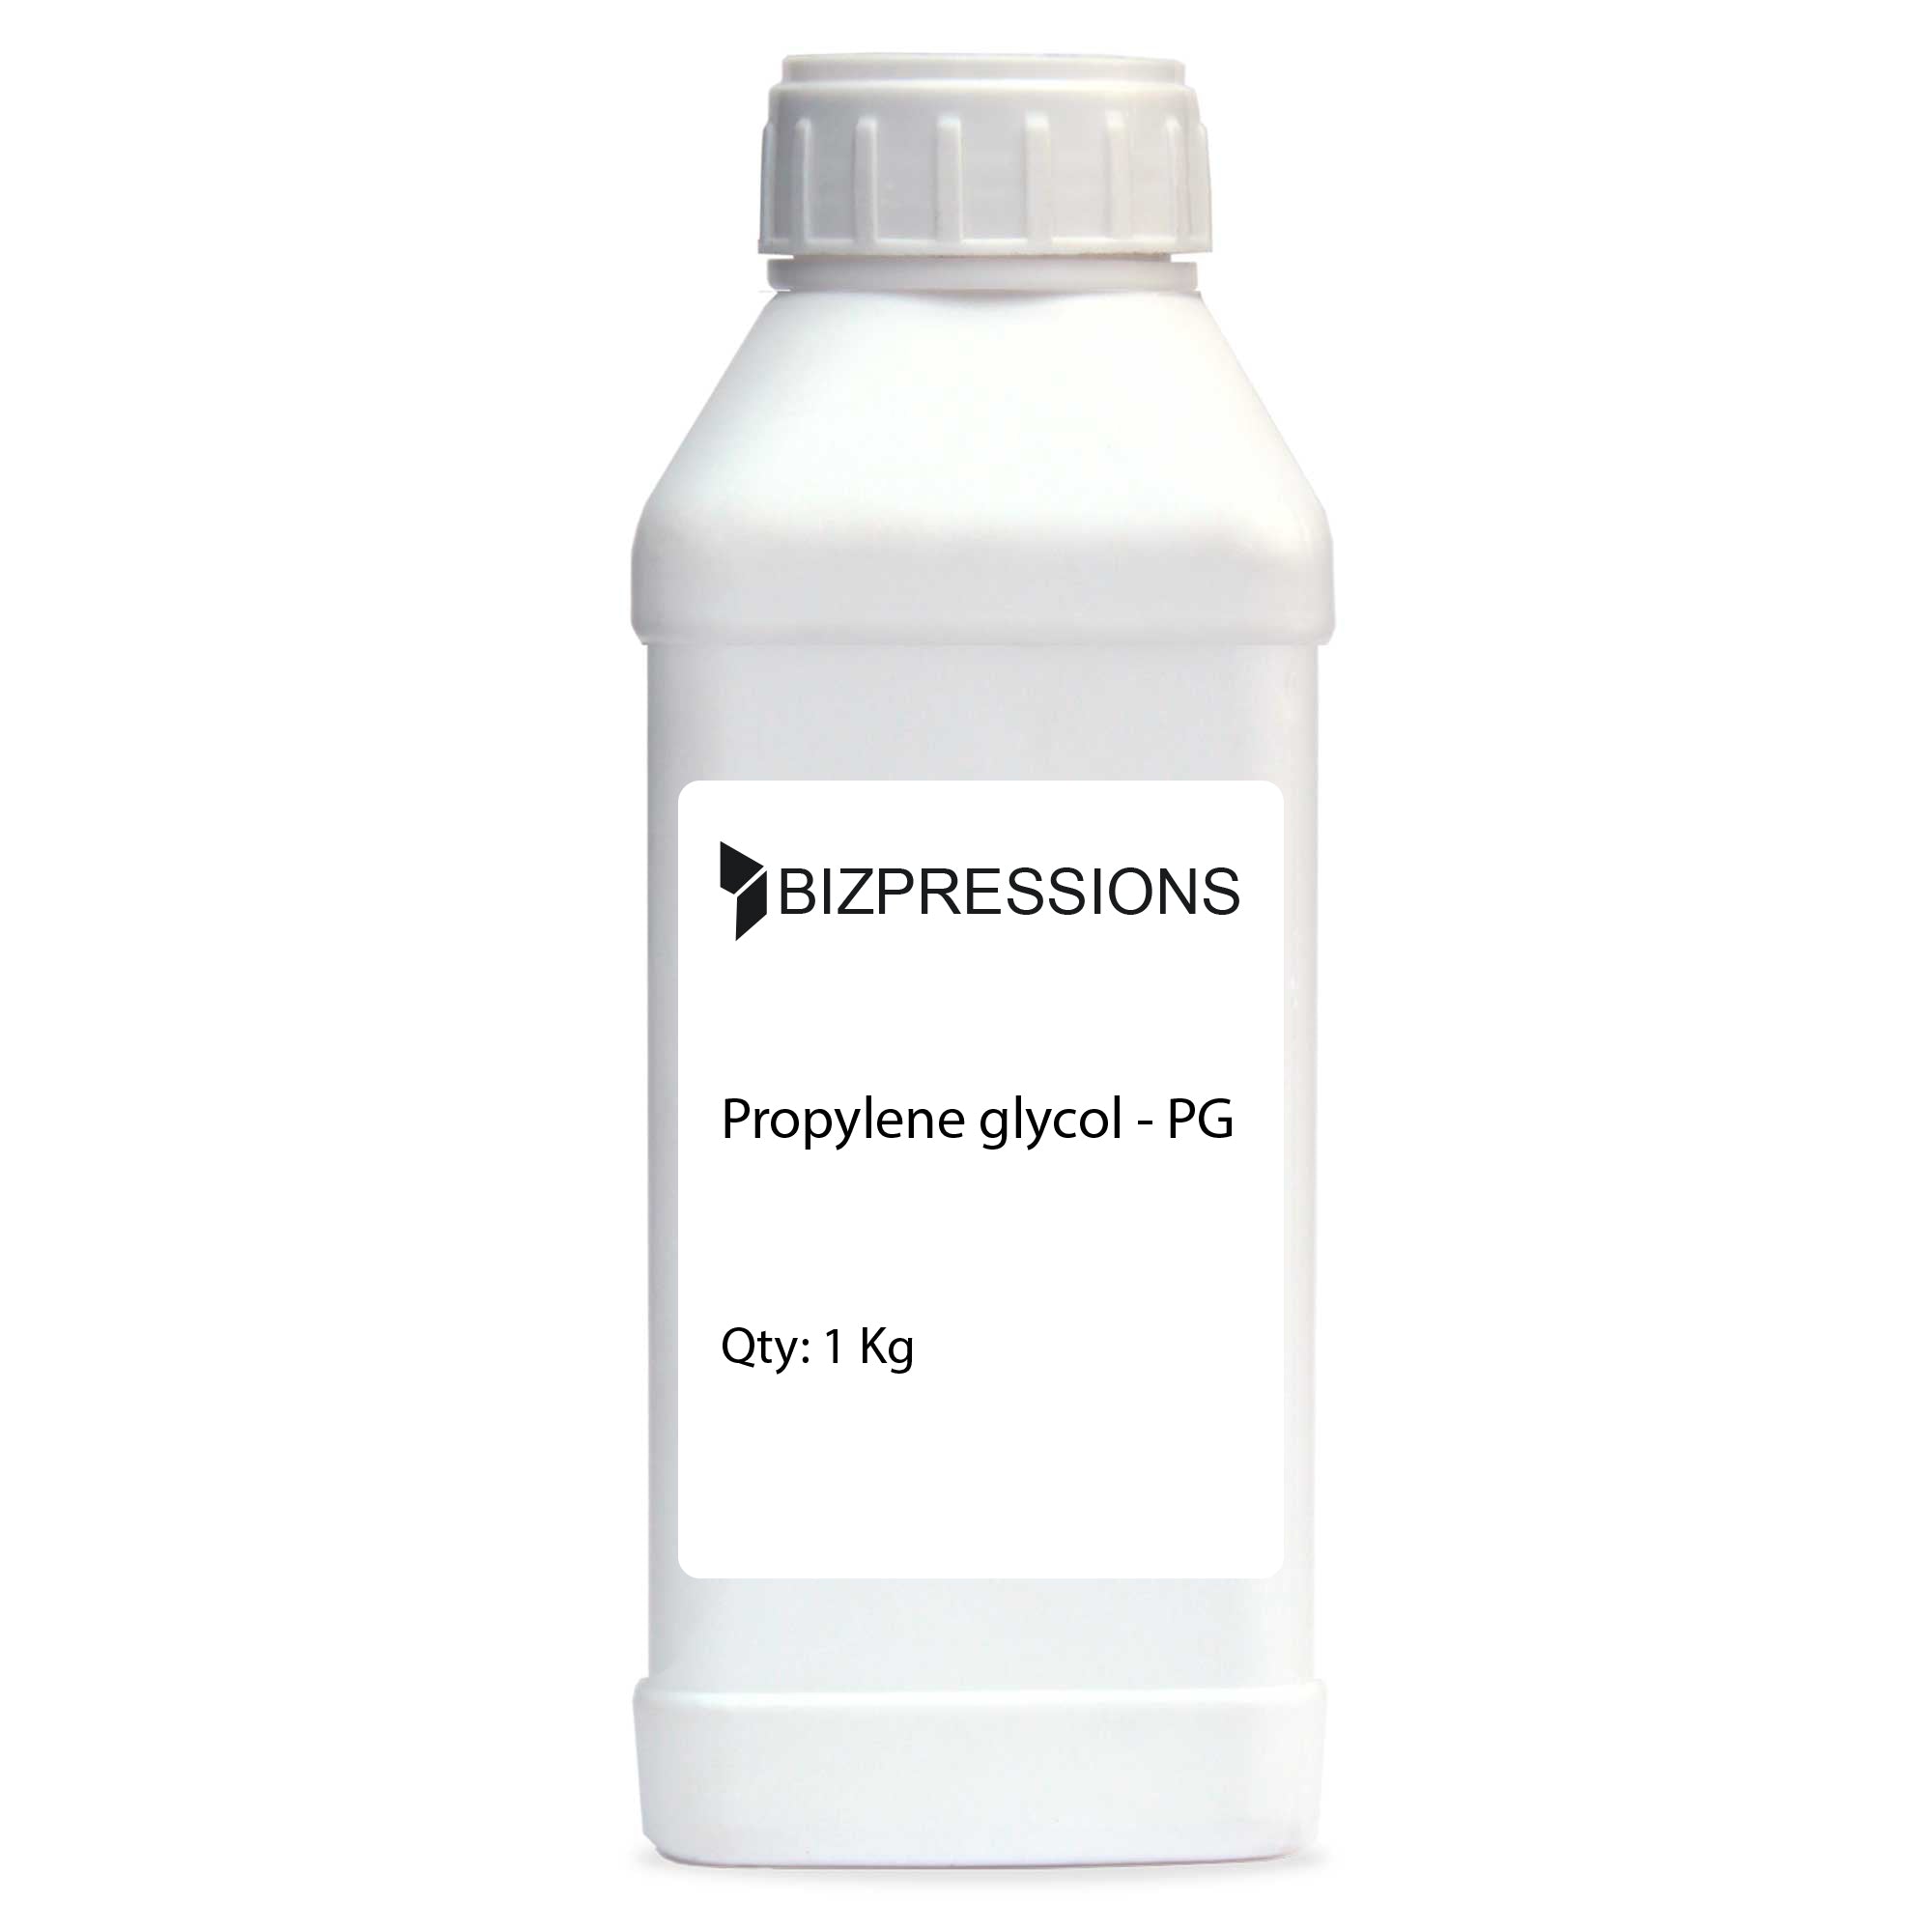 Propylene glycol - PG